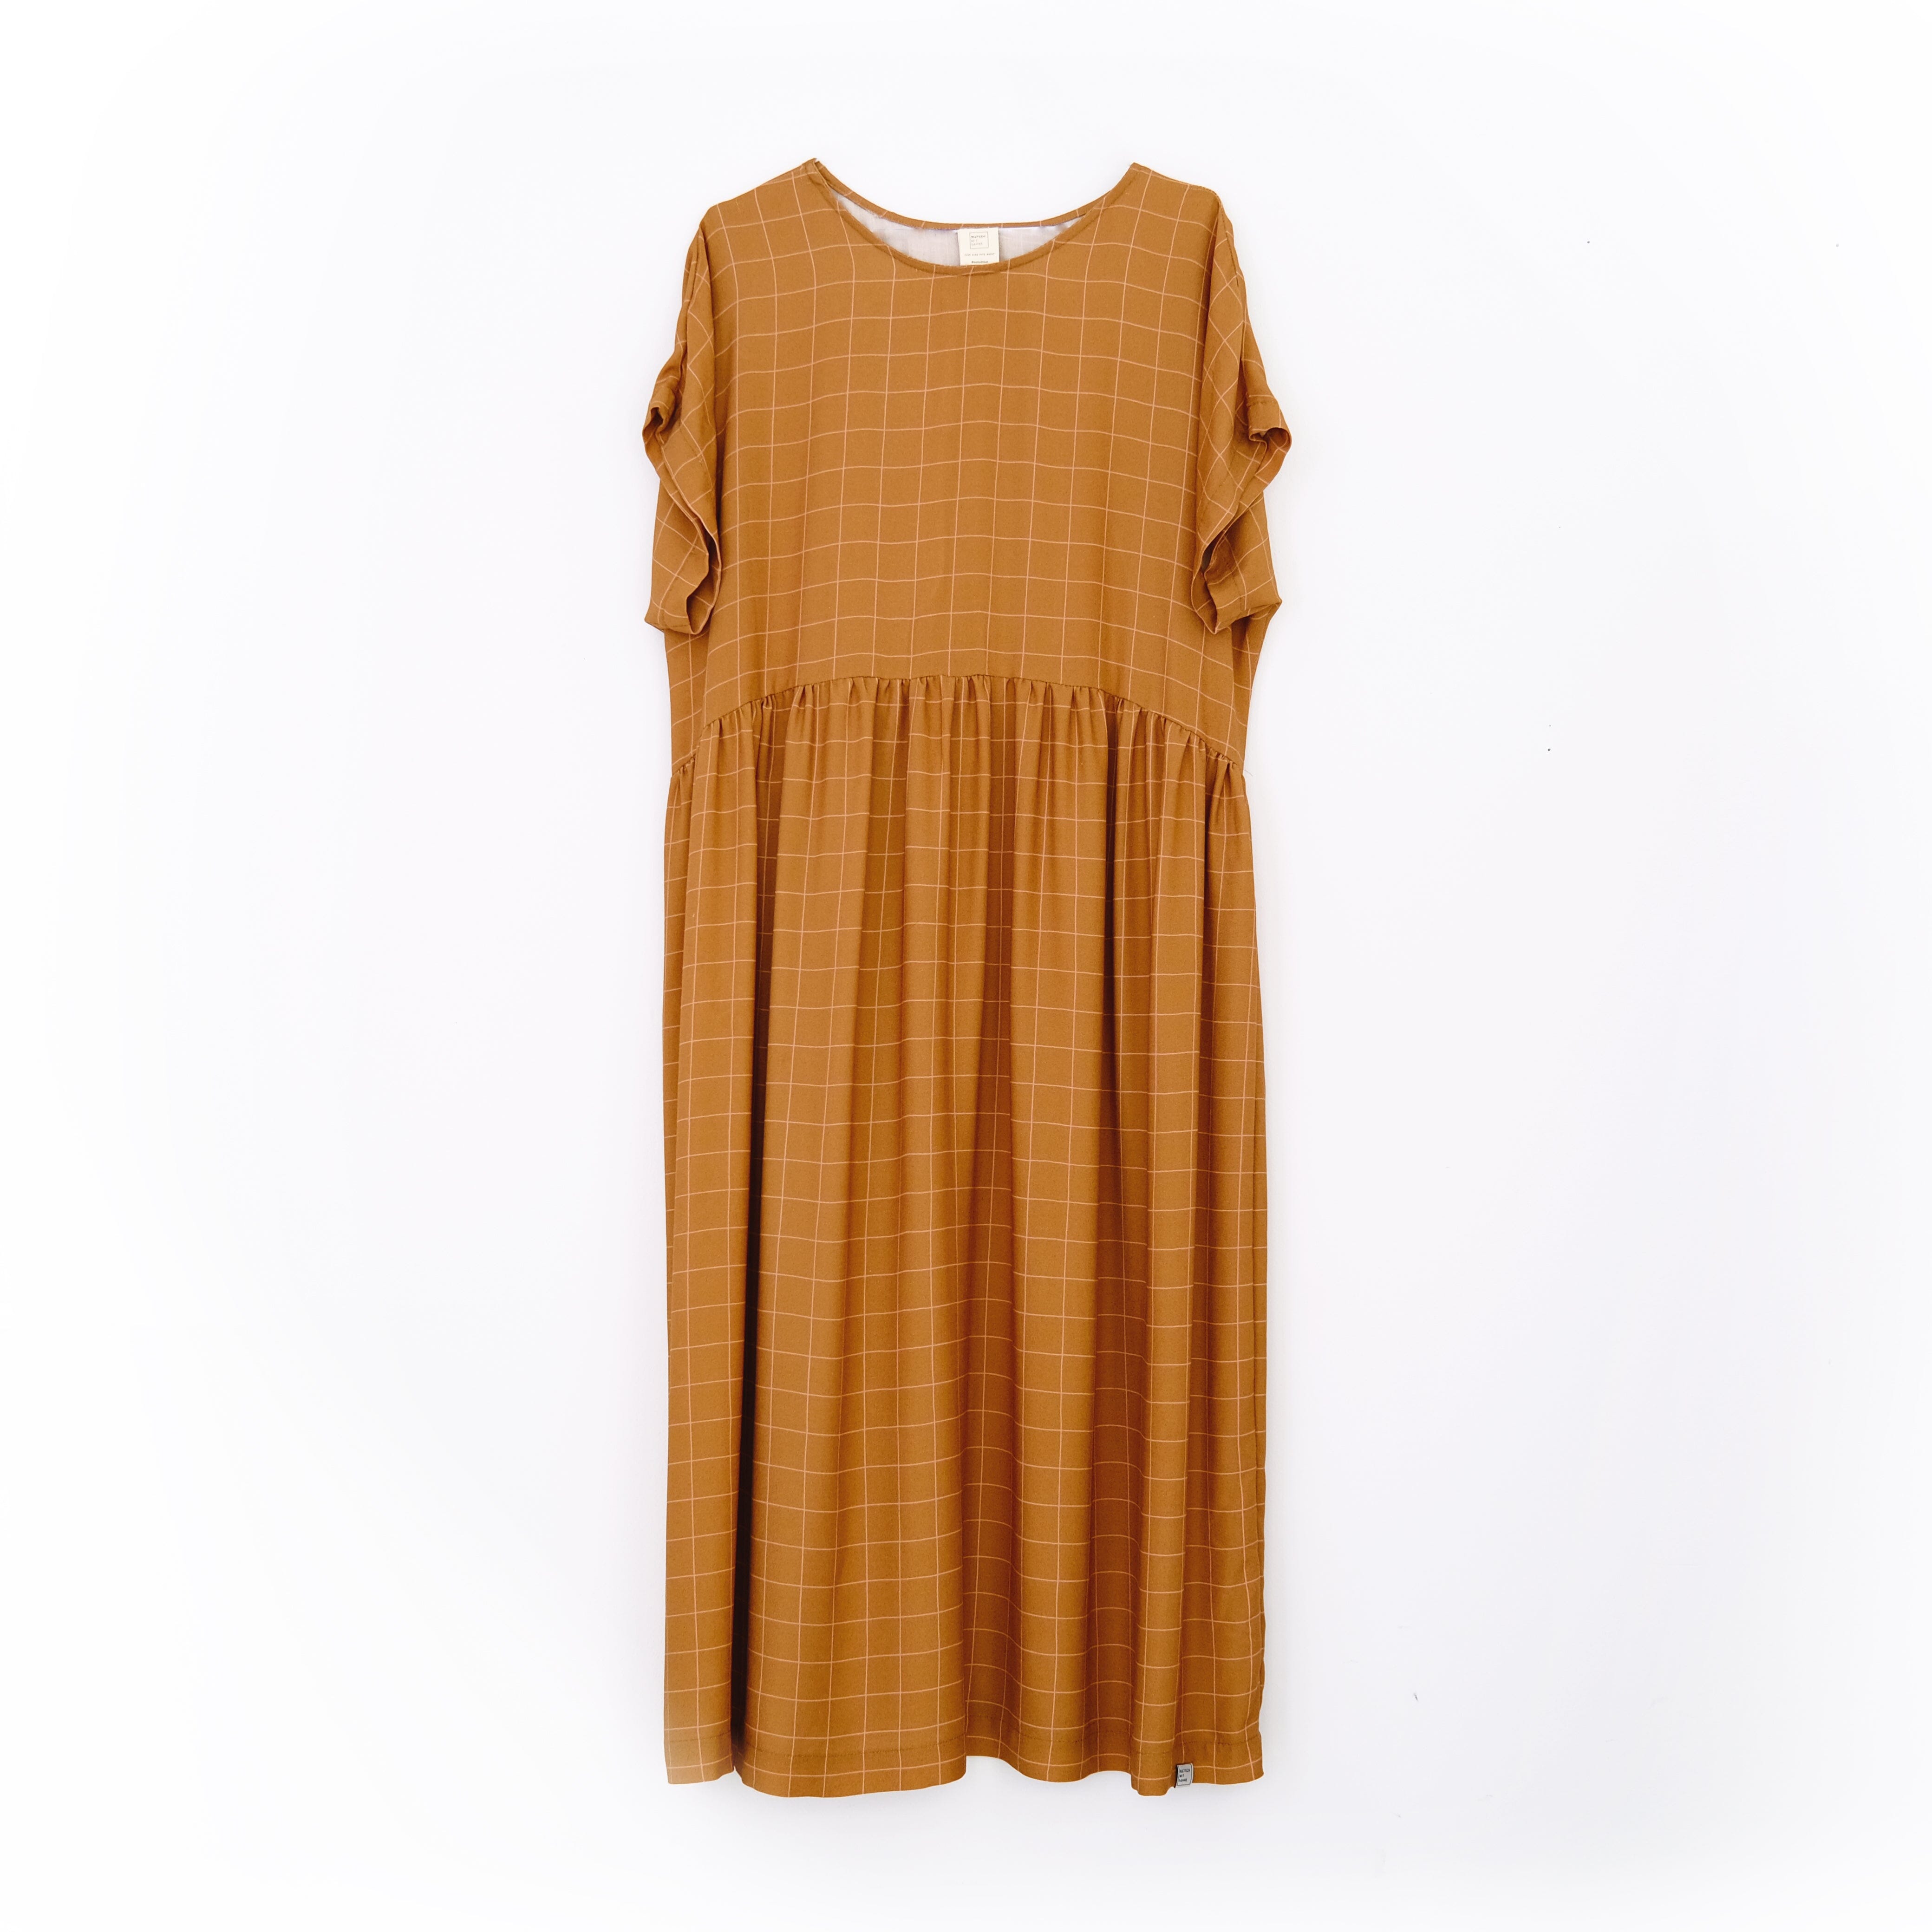 Oversize Kleid "Viskose Grid" Bekleidung & Accessoires Matsch mit Sahne Toffee / Nude 